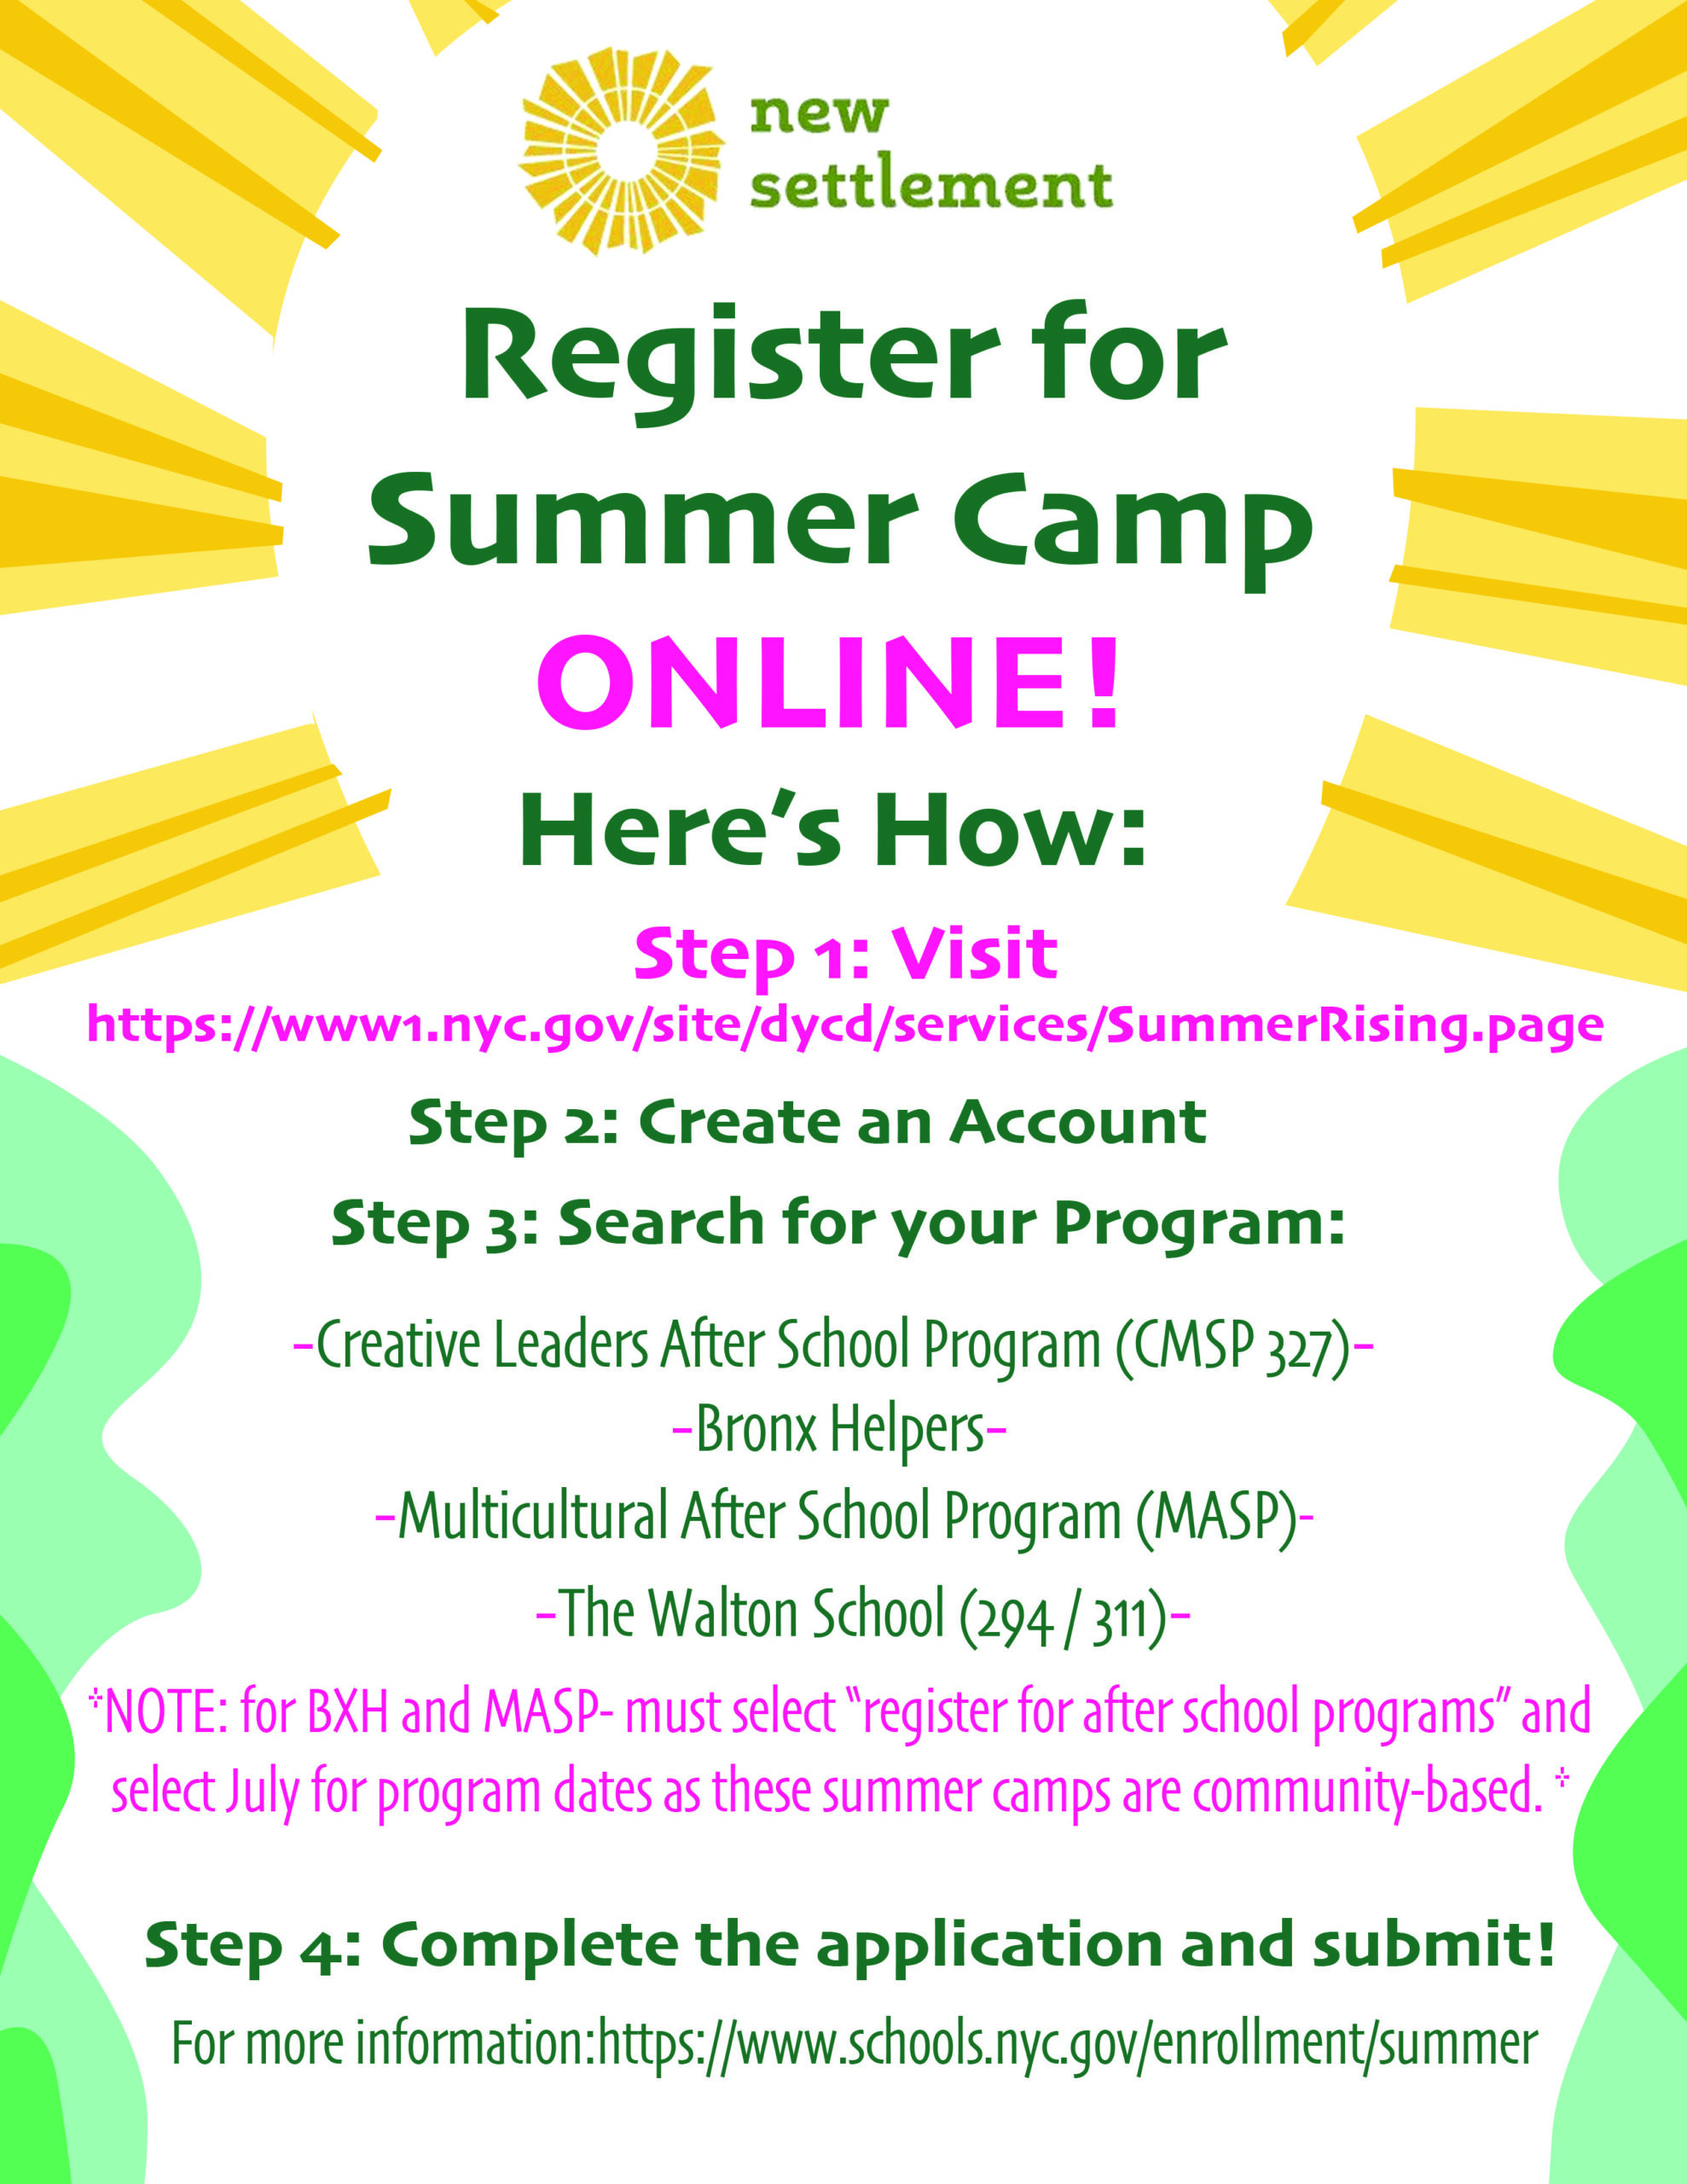 Register Online for New Settlement’s Summer Camps! New Settlement